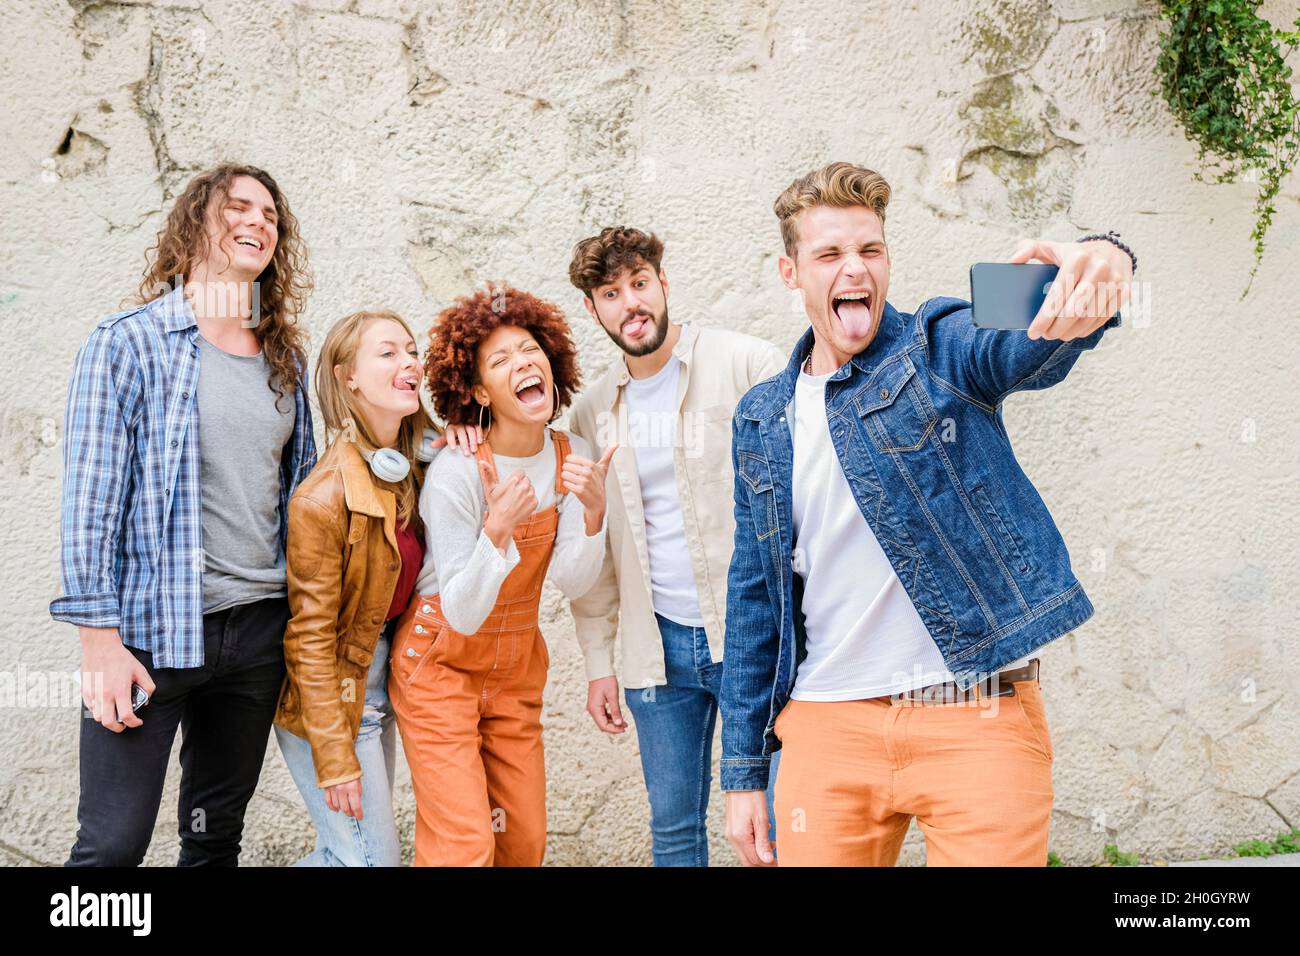 Des jeunes heureux prenant le selfie dans la ville - groupe multiracial d'amis prend une photo regardant l'appareil photo Banque D'Images